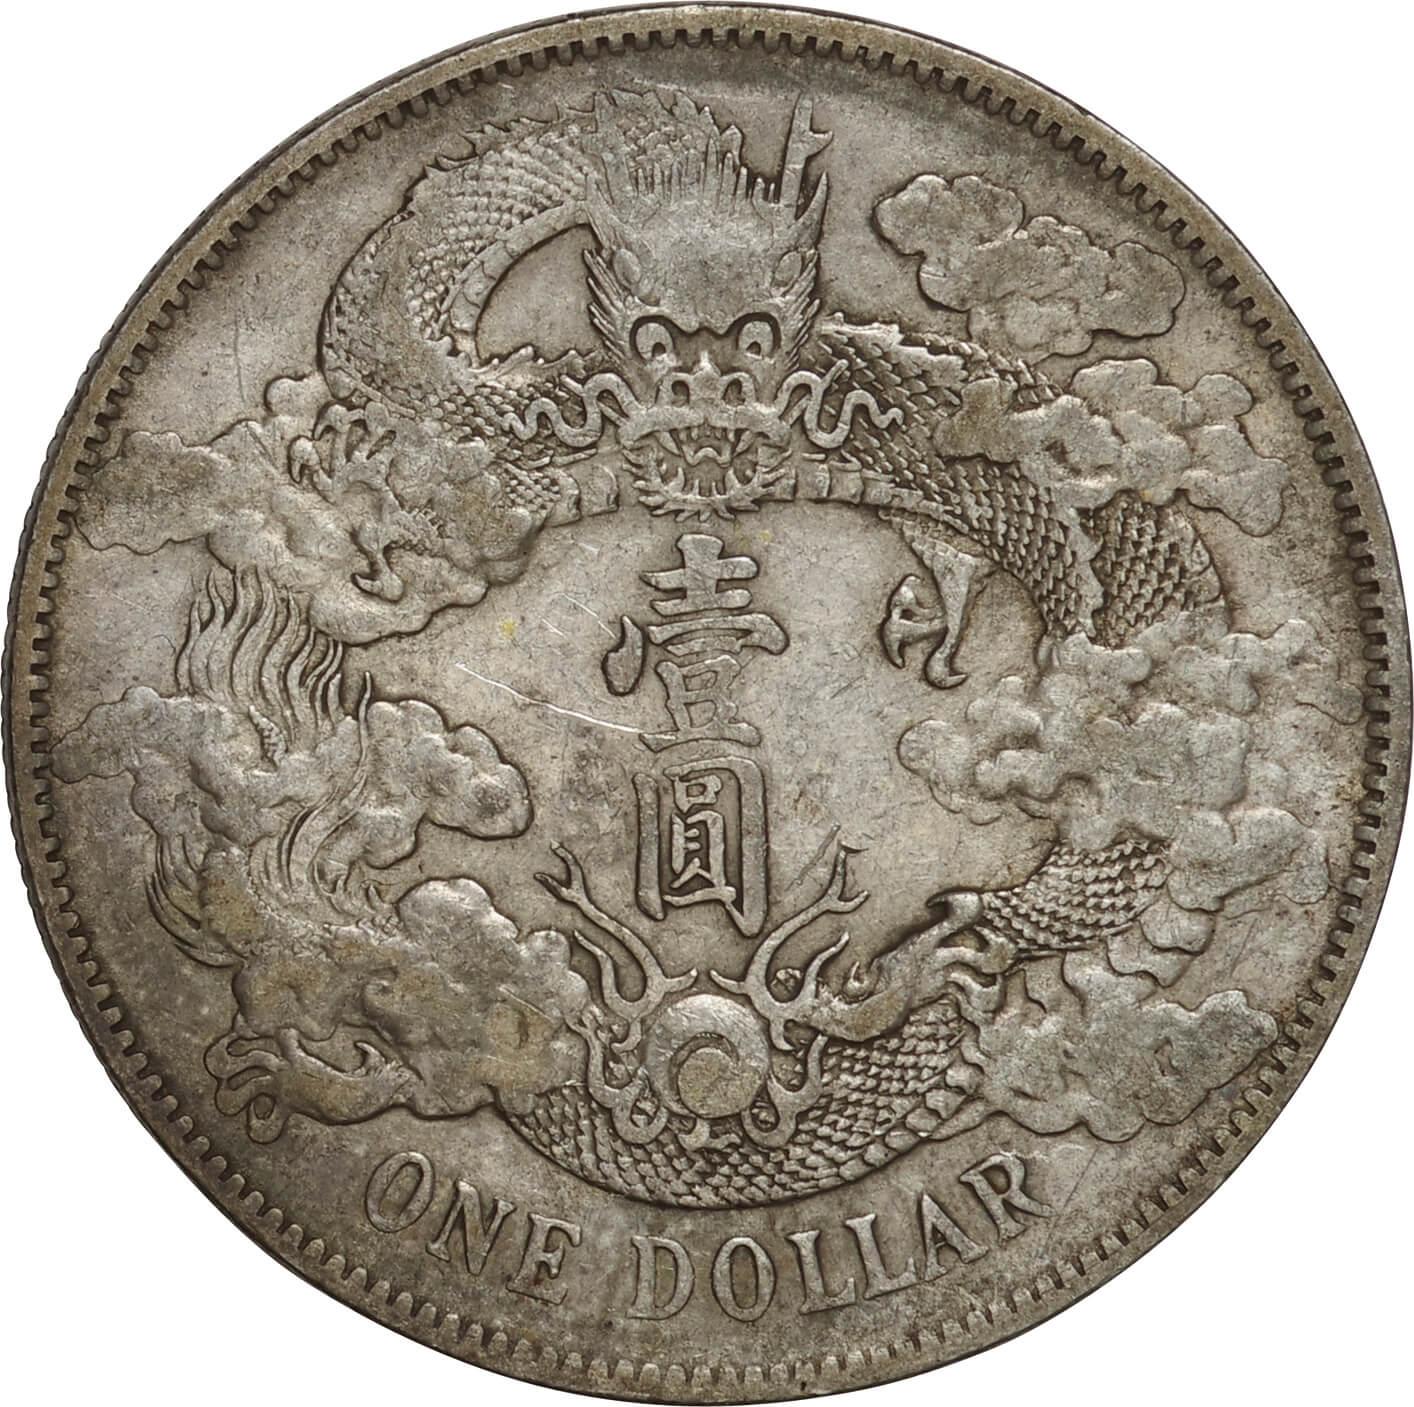 中国-China. 1911. Silver. ドル(Dollar). 美. VF. 大清帝国 大清銀幣 